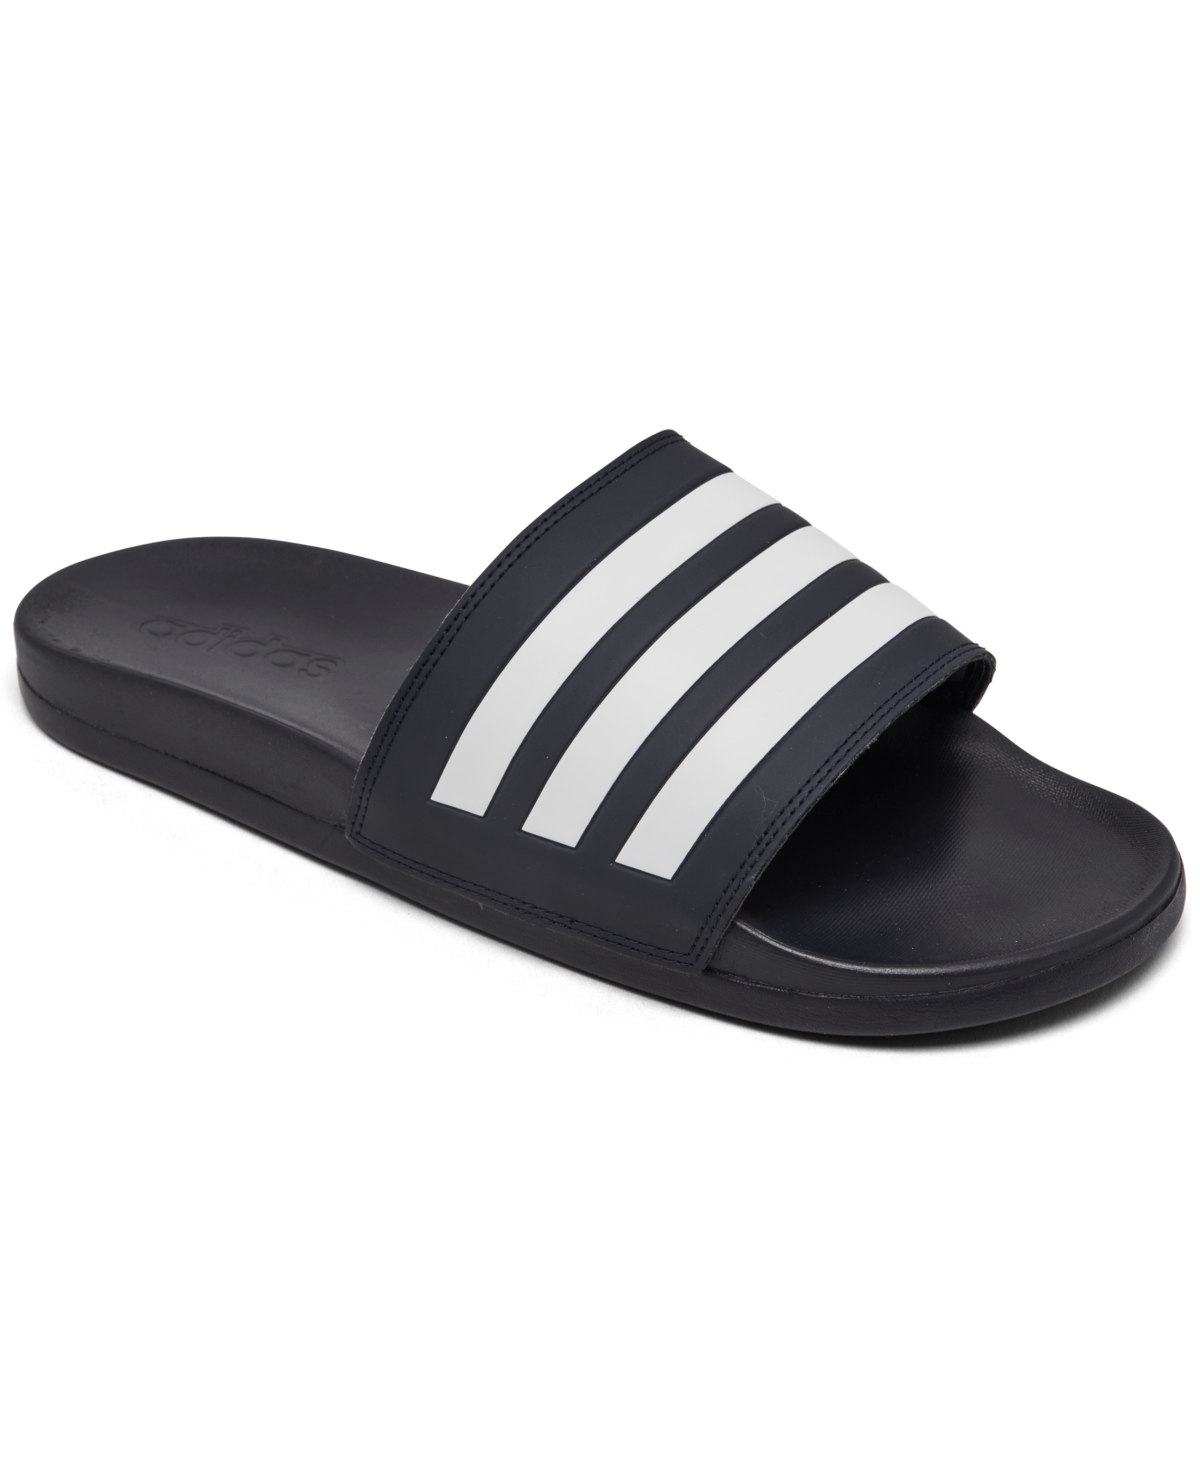 Men's Adilette Comfort Slide Sandals from Finish Line - Ink/White